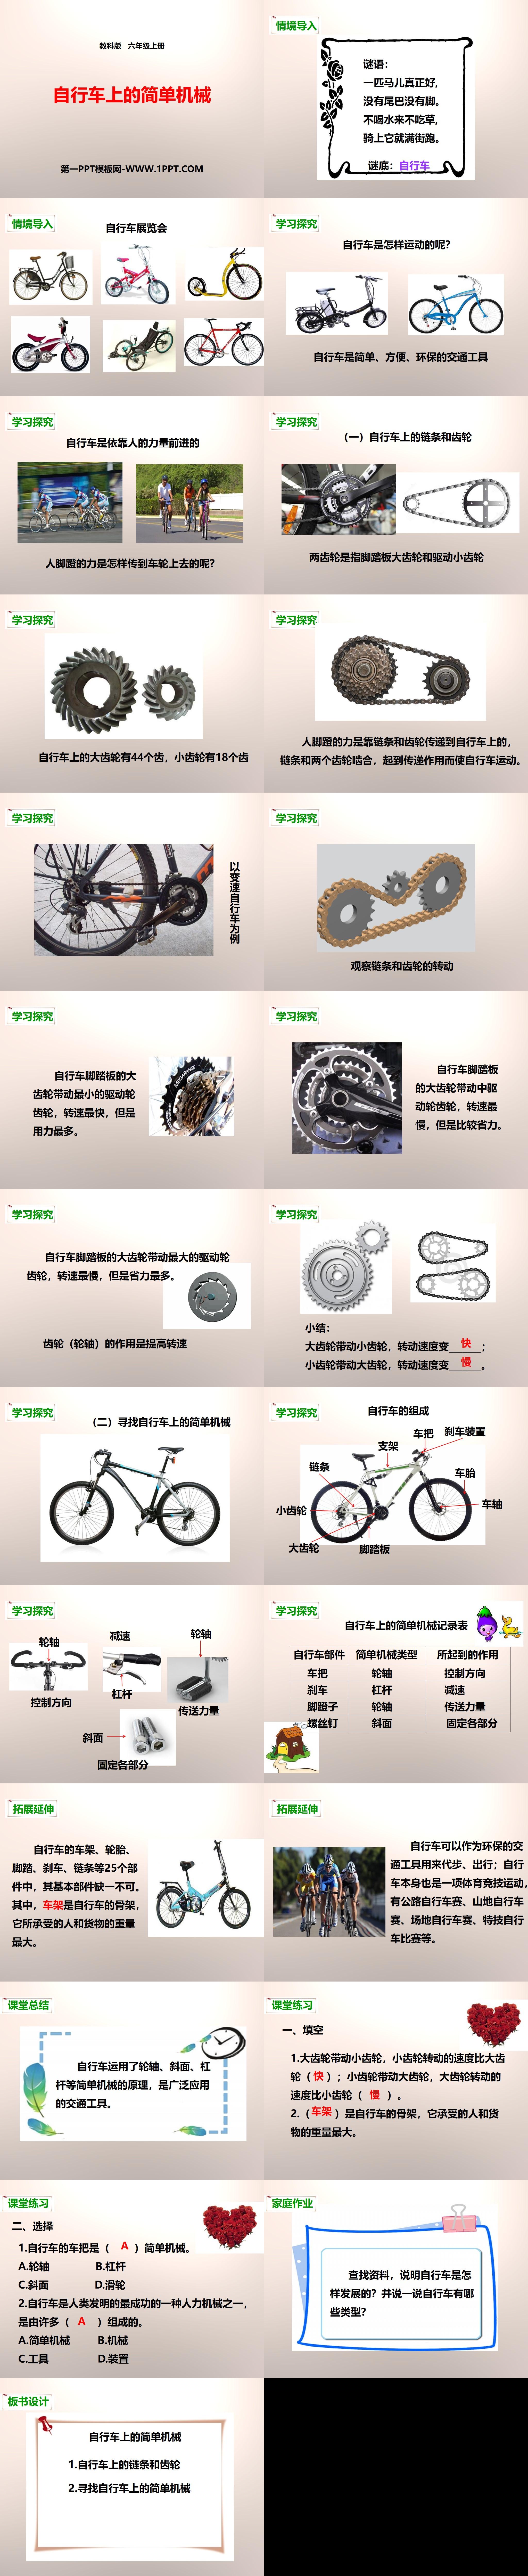 《自行车上的简单机械》工具和机械PPT下载
（2）